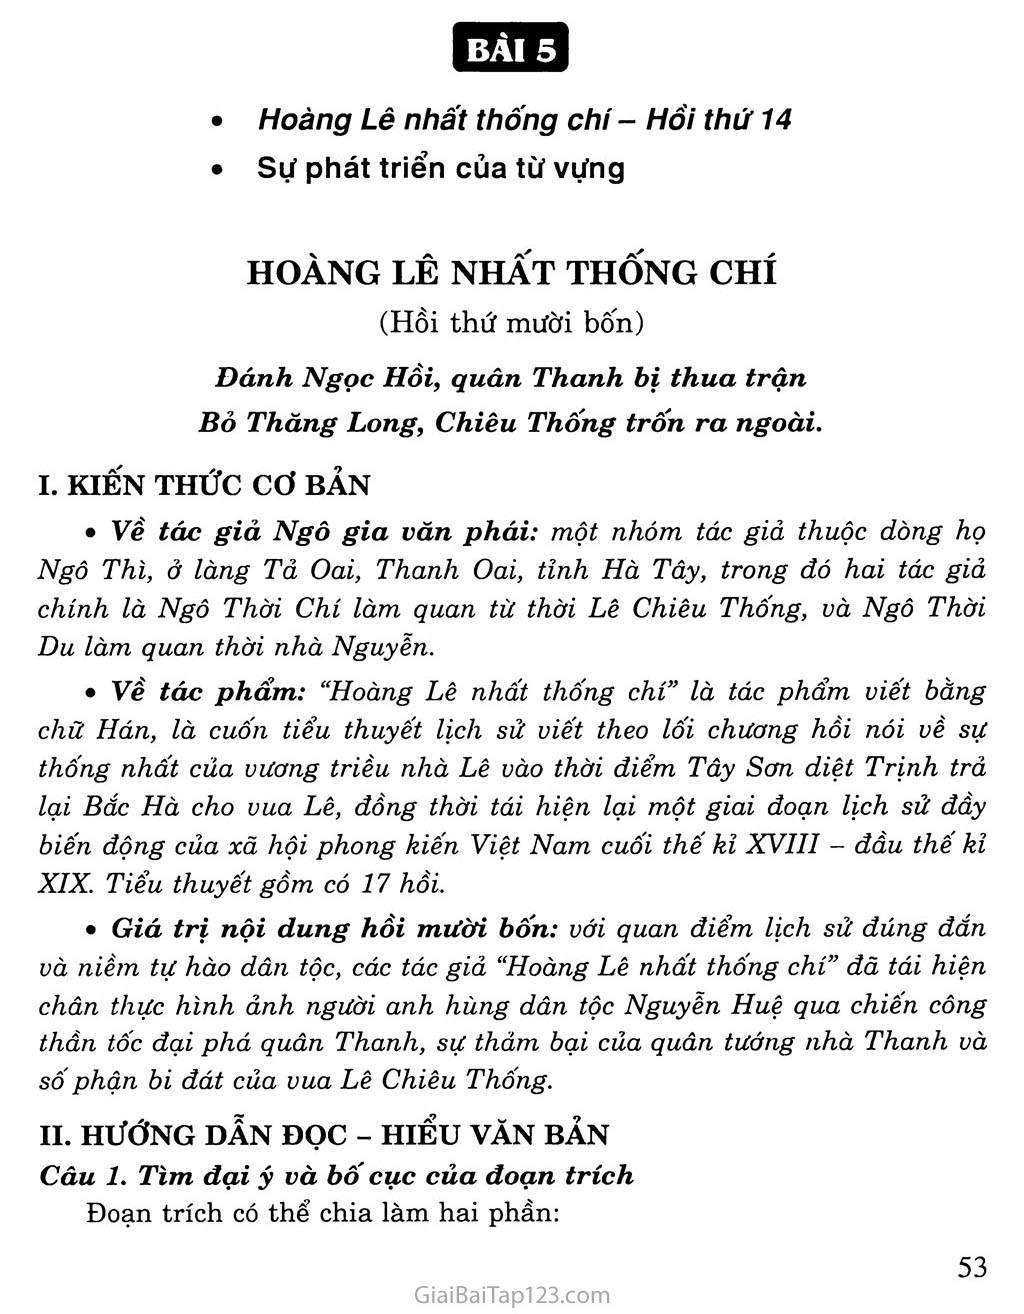 Hoàng Lê nhất thống chí - Hồi thứ mười bốn (trích) trang 1